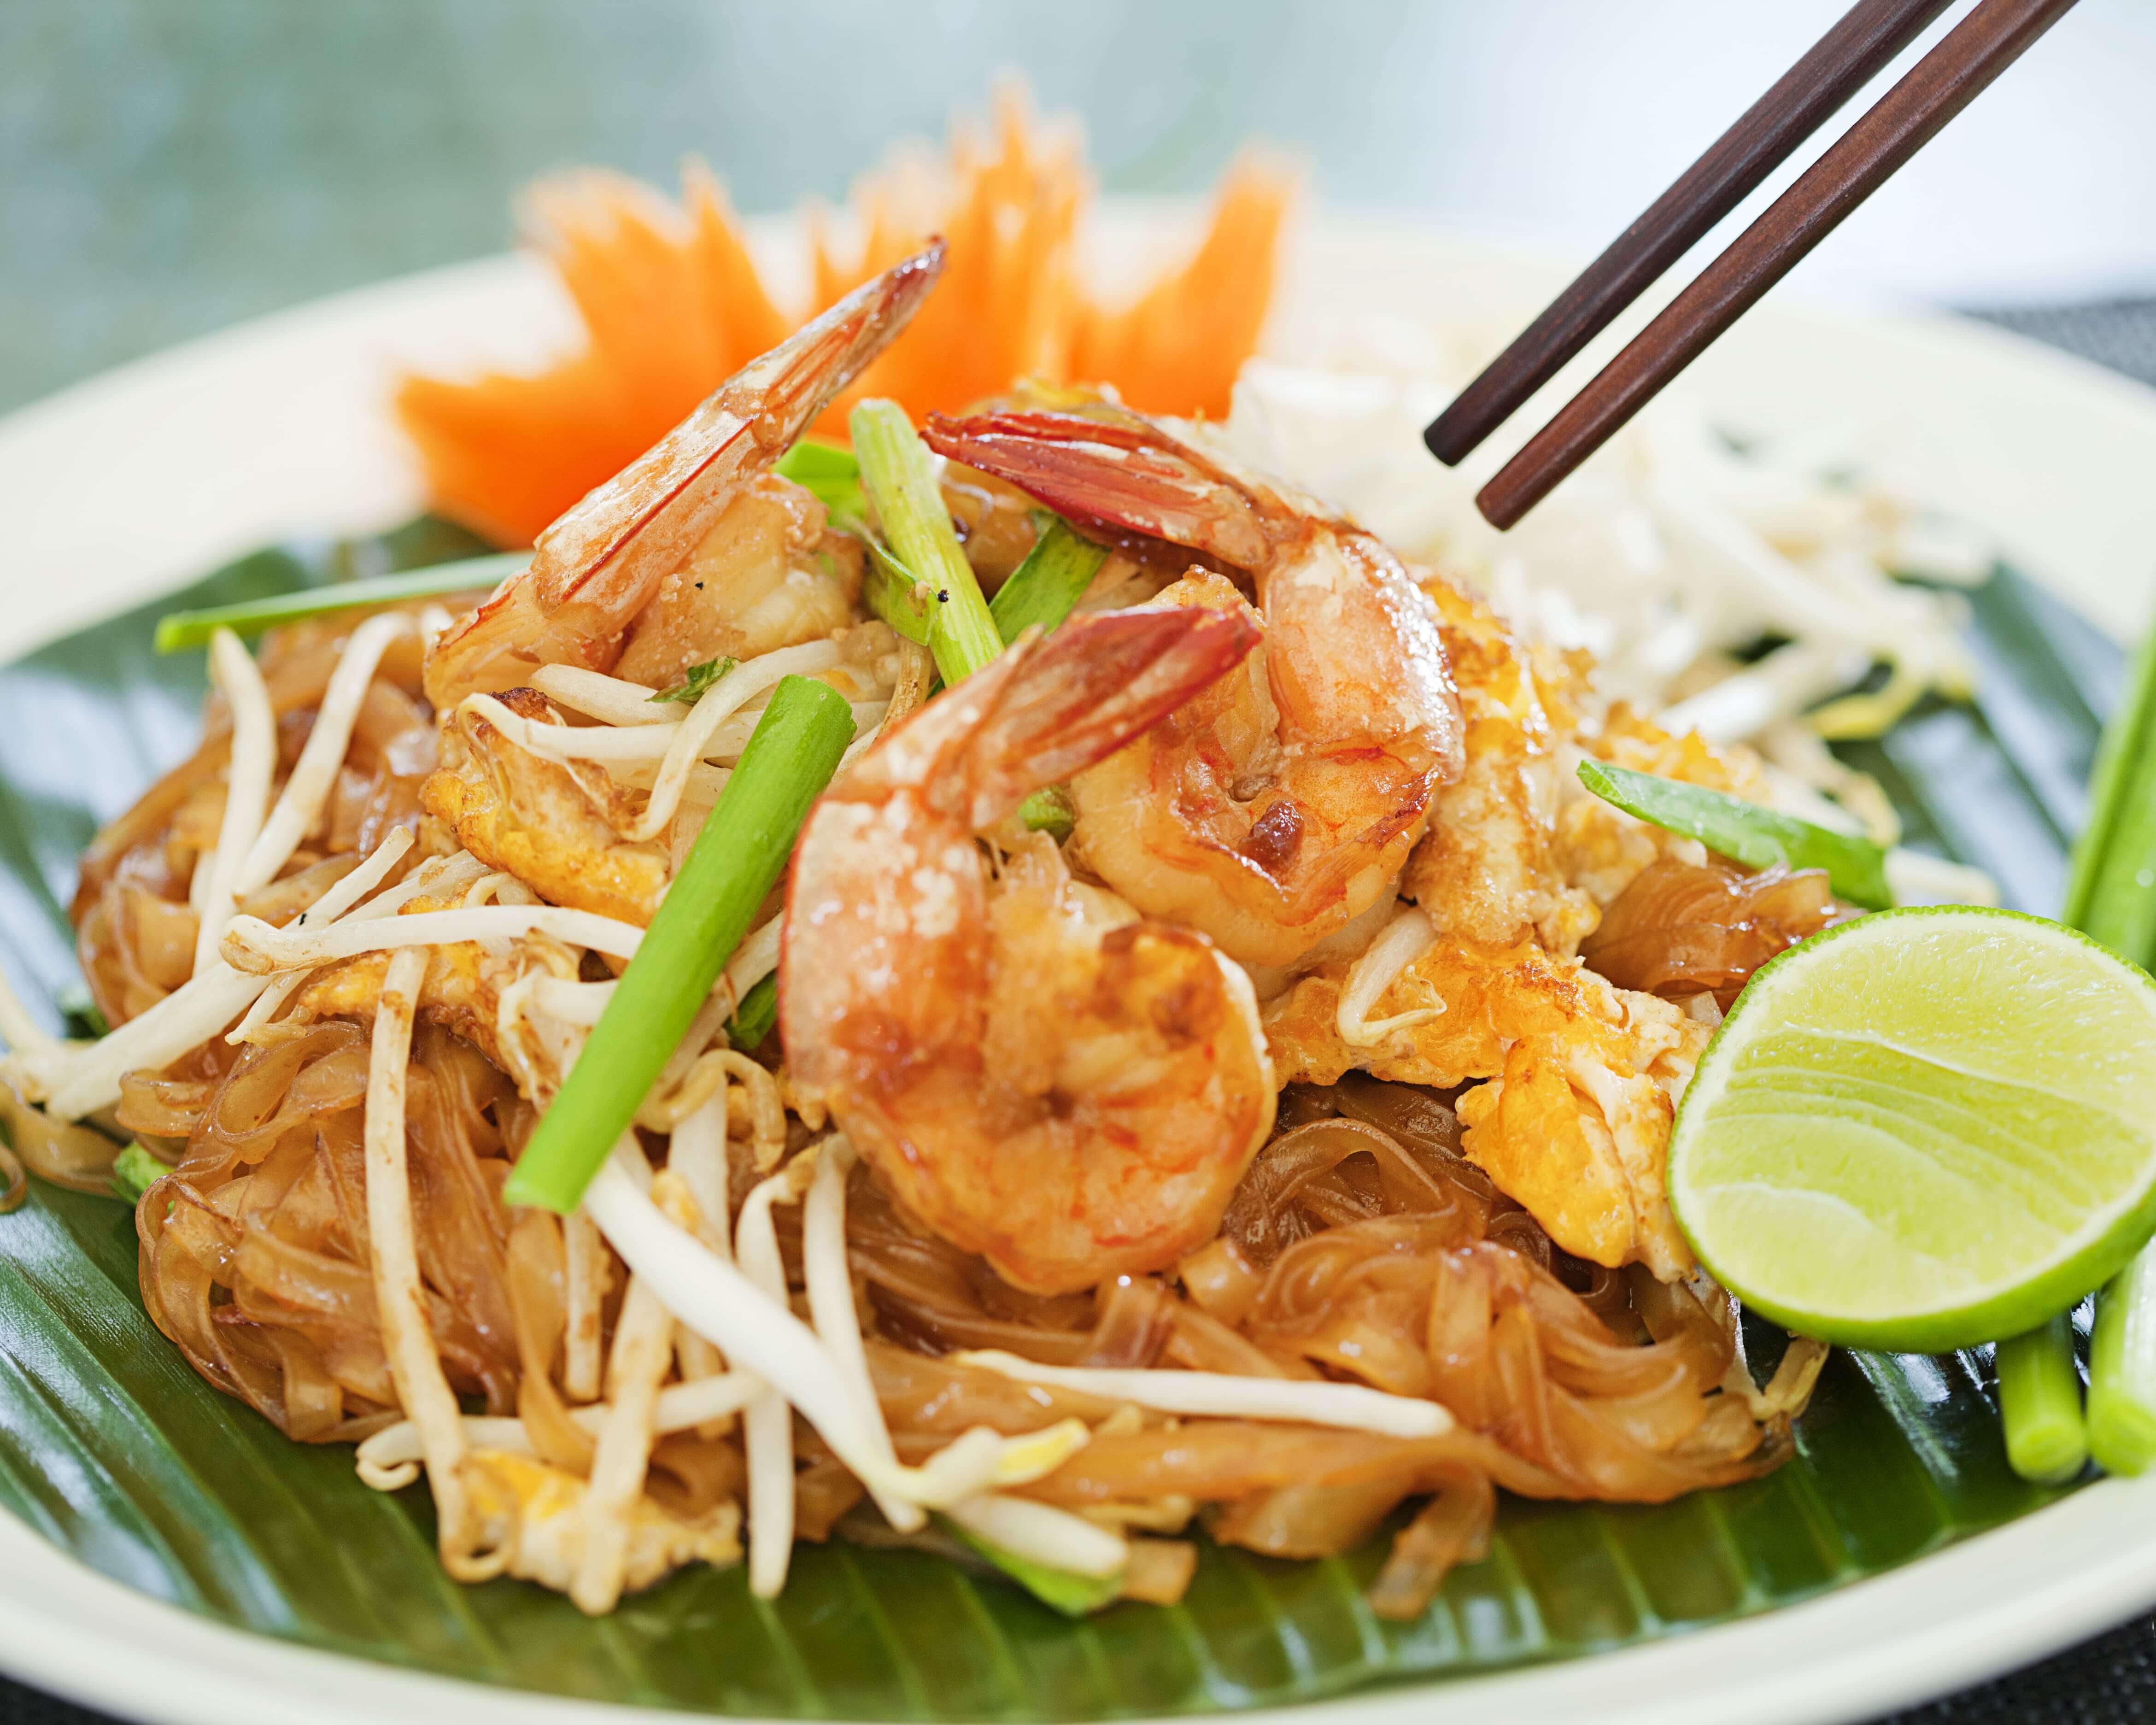 LUV Thai Cuisine